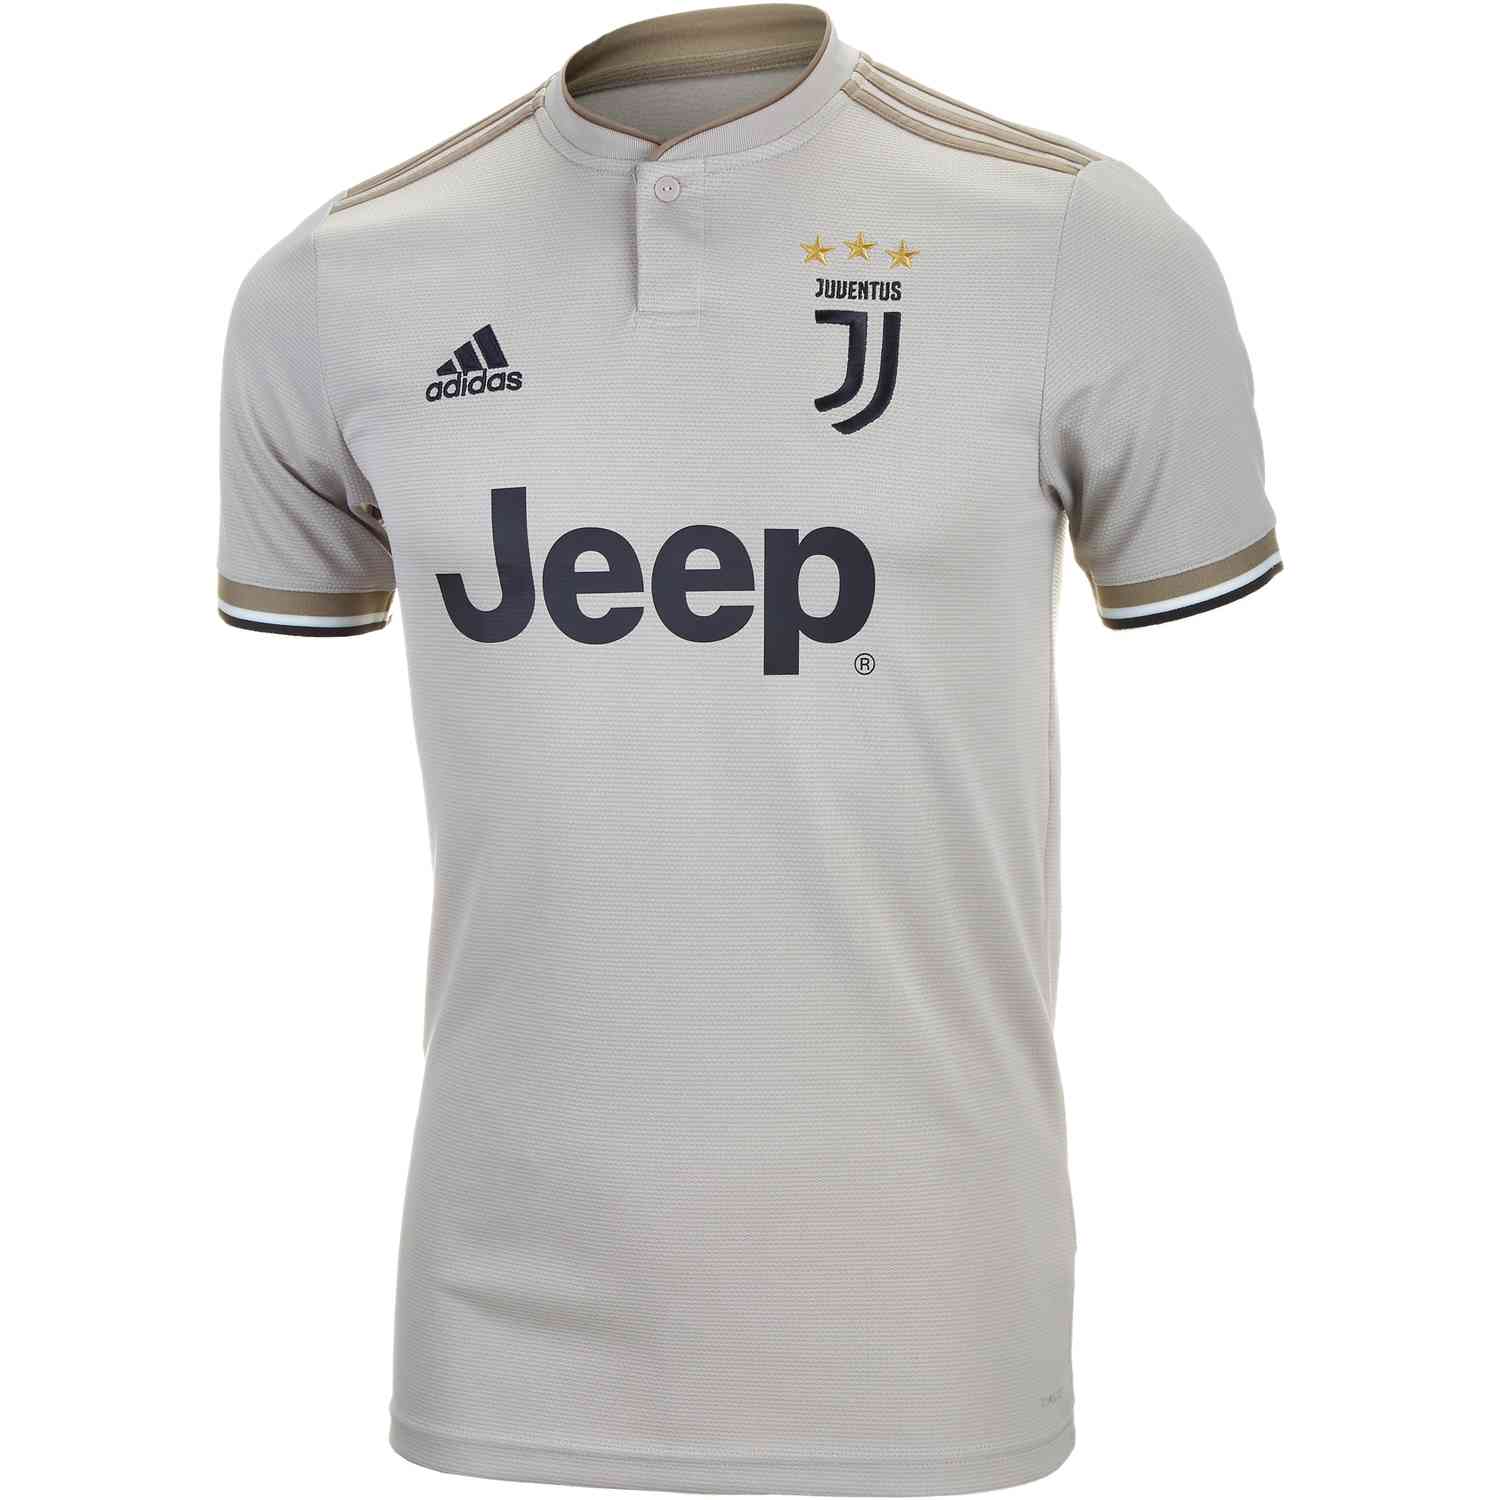 adidas Juventus Home Jersey Mens 2018/19 - Black/White